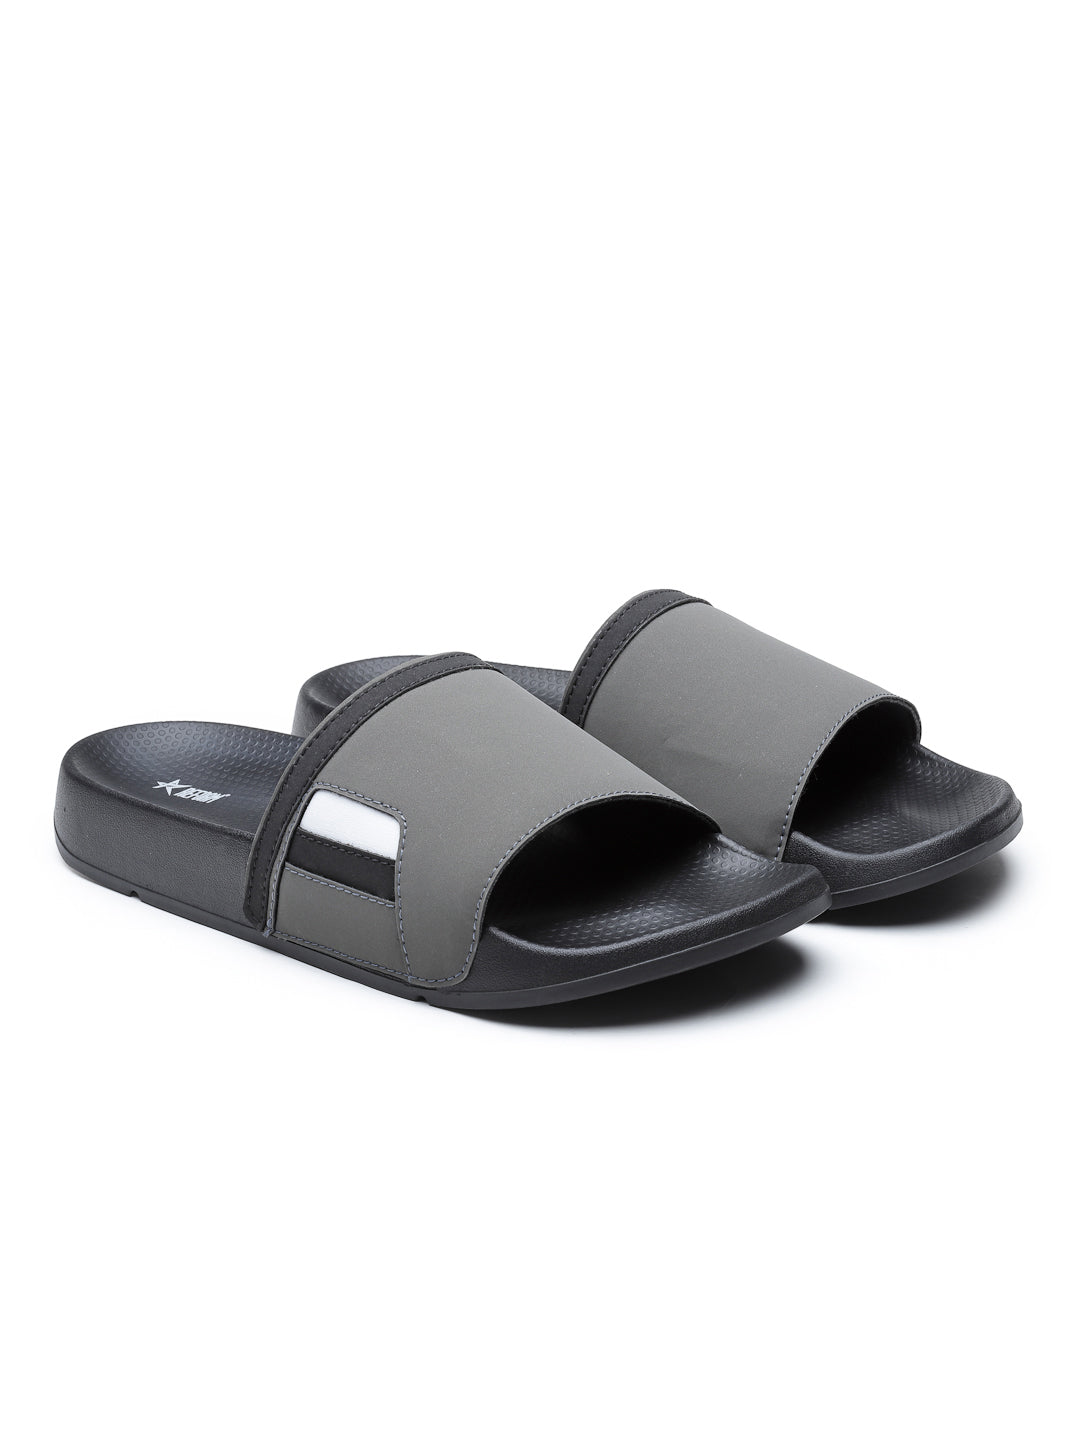 Black Grey Solid  PU Slip-On Sliders For Men